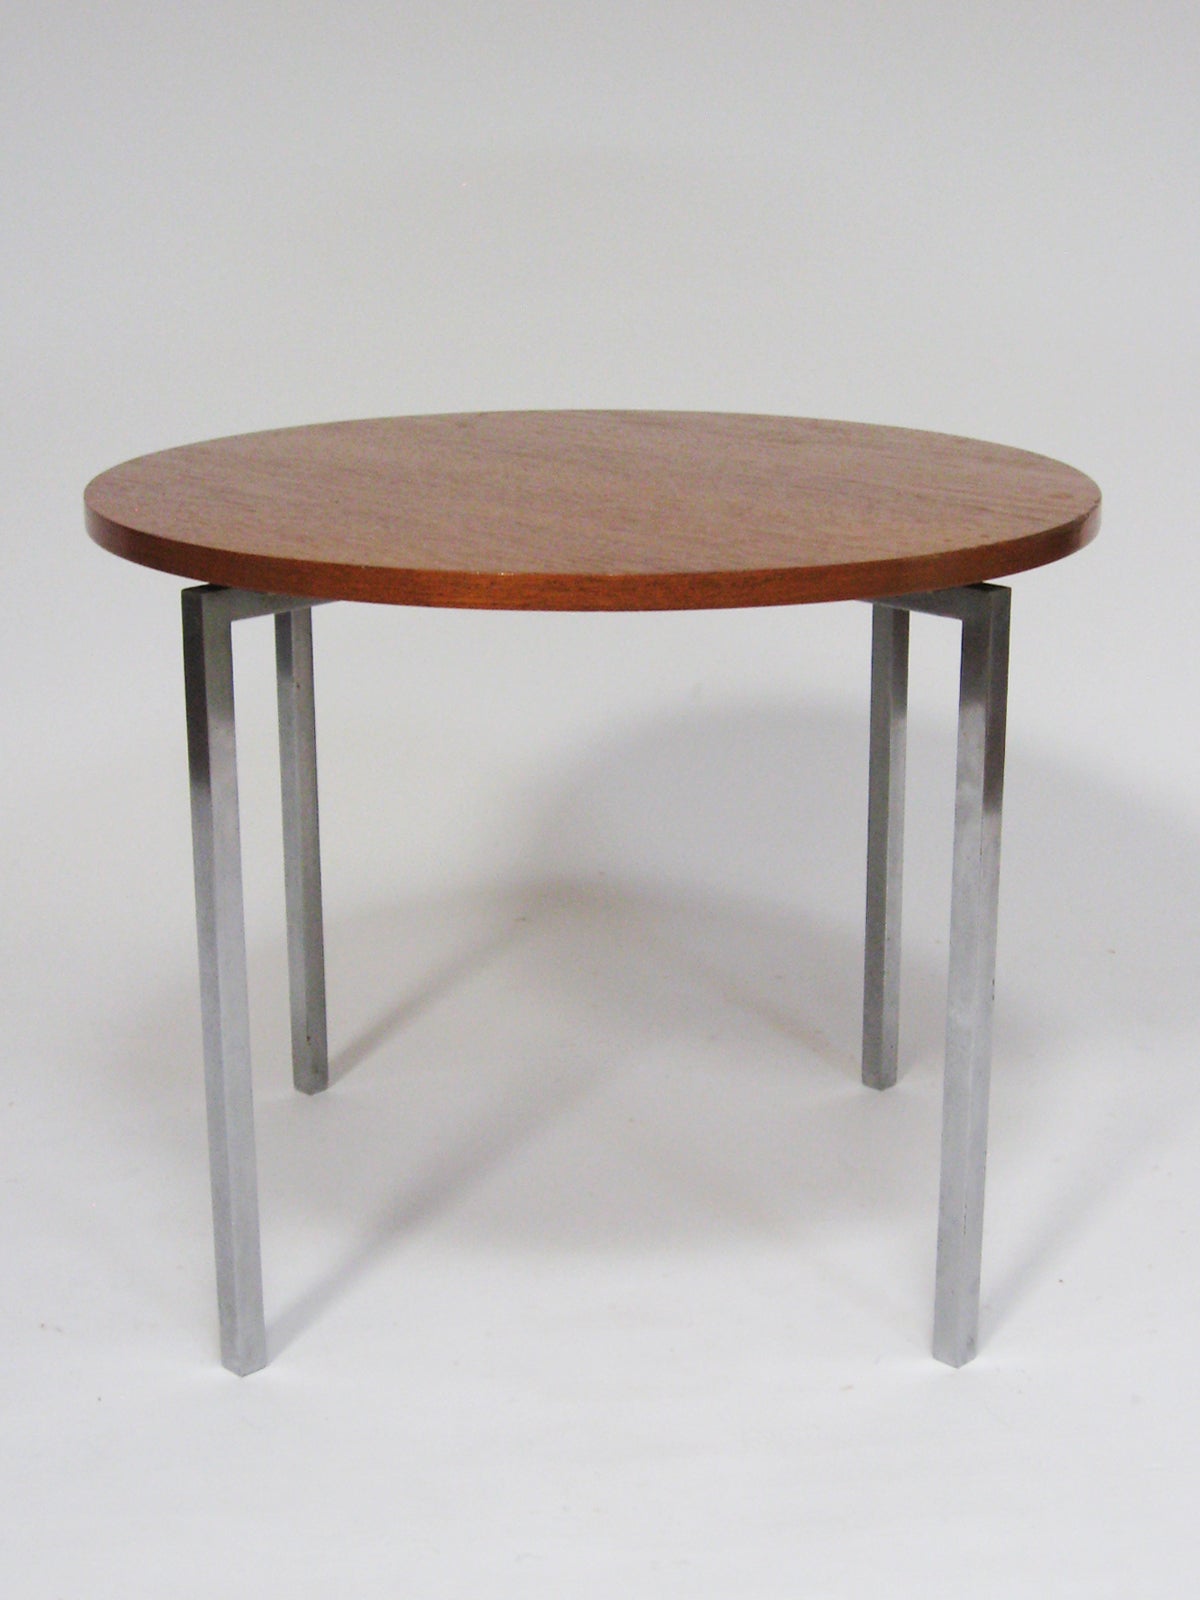 Dieser großartige kleine Tisch, der von Florence Knoll entworfen wurde, ist ein perfektes Beispiel für ihren ausgeprägten Sinn für raffiniertes Design und die Qualität der alten Knoll-Produktion. Die runde Teakholzplatte wird von einem massiven